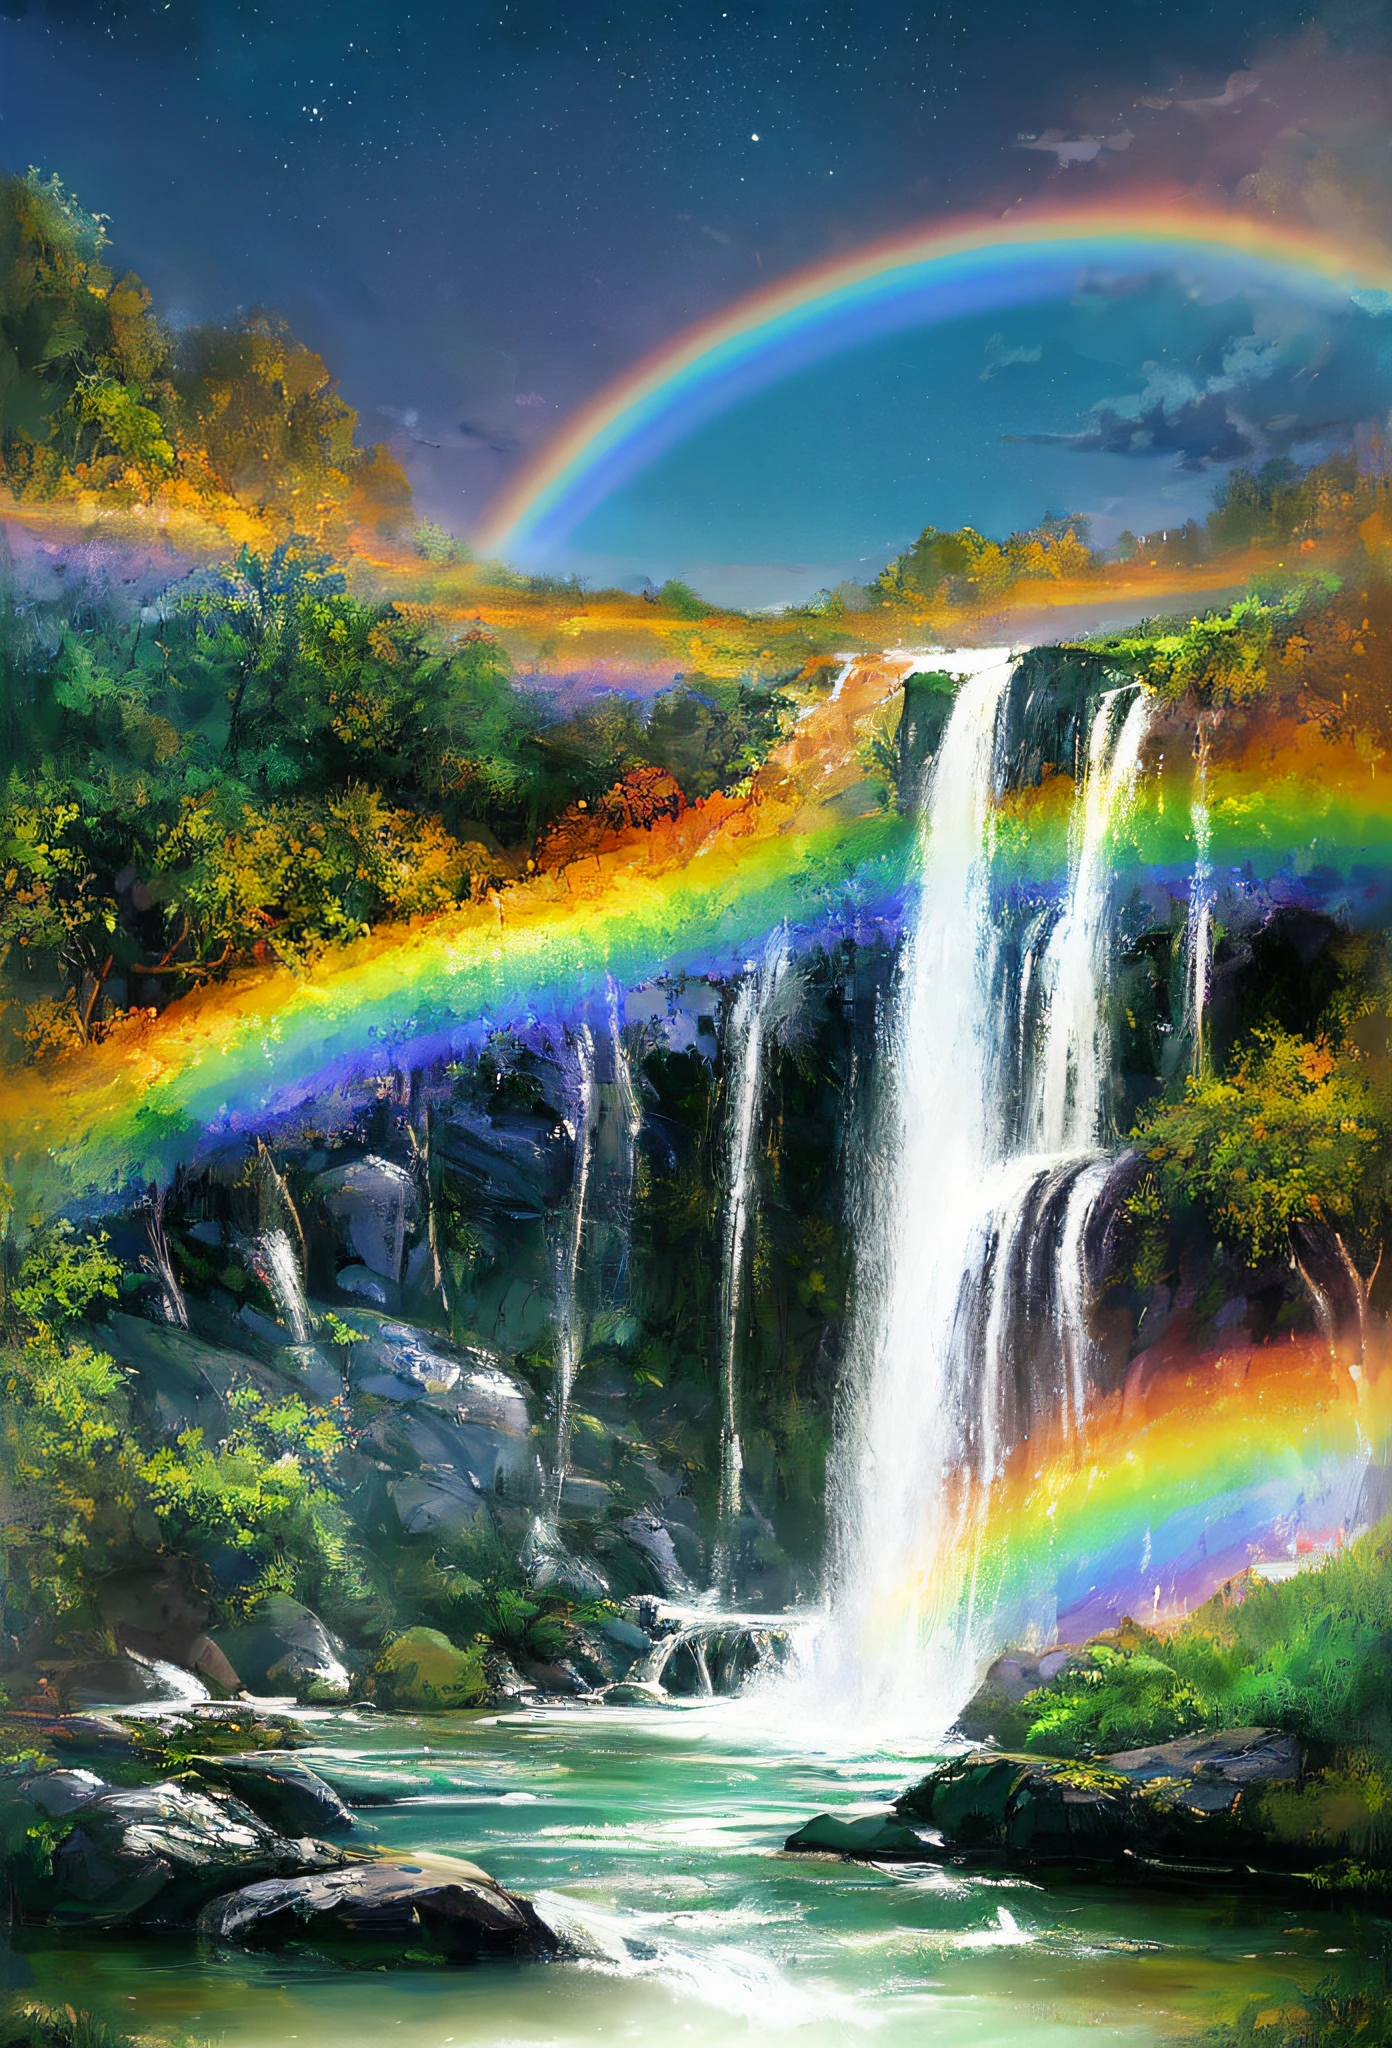 ((melhor qualidade)), ((Obra de arte)), ((ultra realistic)), ((noite)), premiada tendência de pintura a óleo suave na estação de arte de uma cachoeira de arco-íris em cascata,